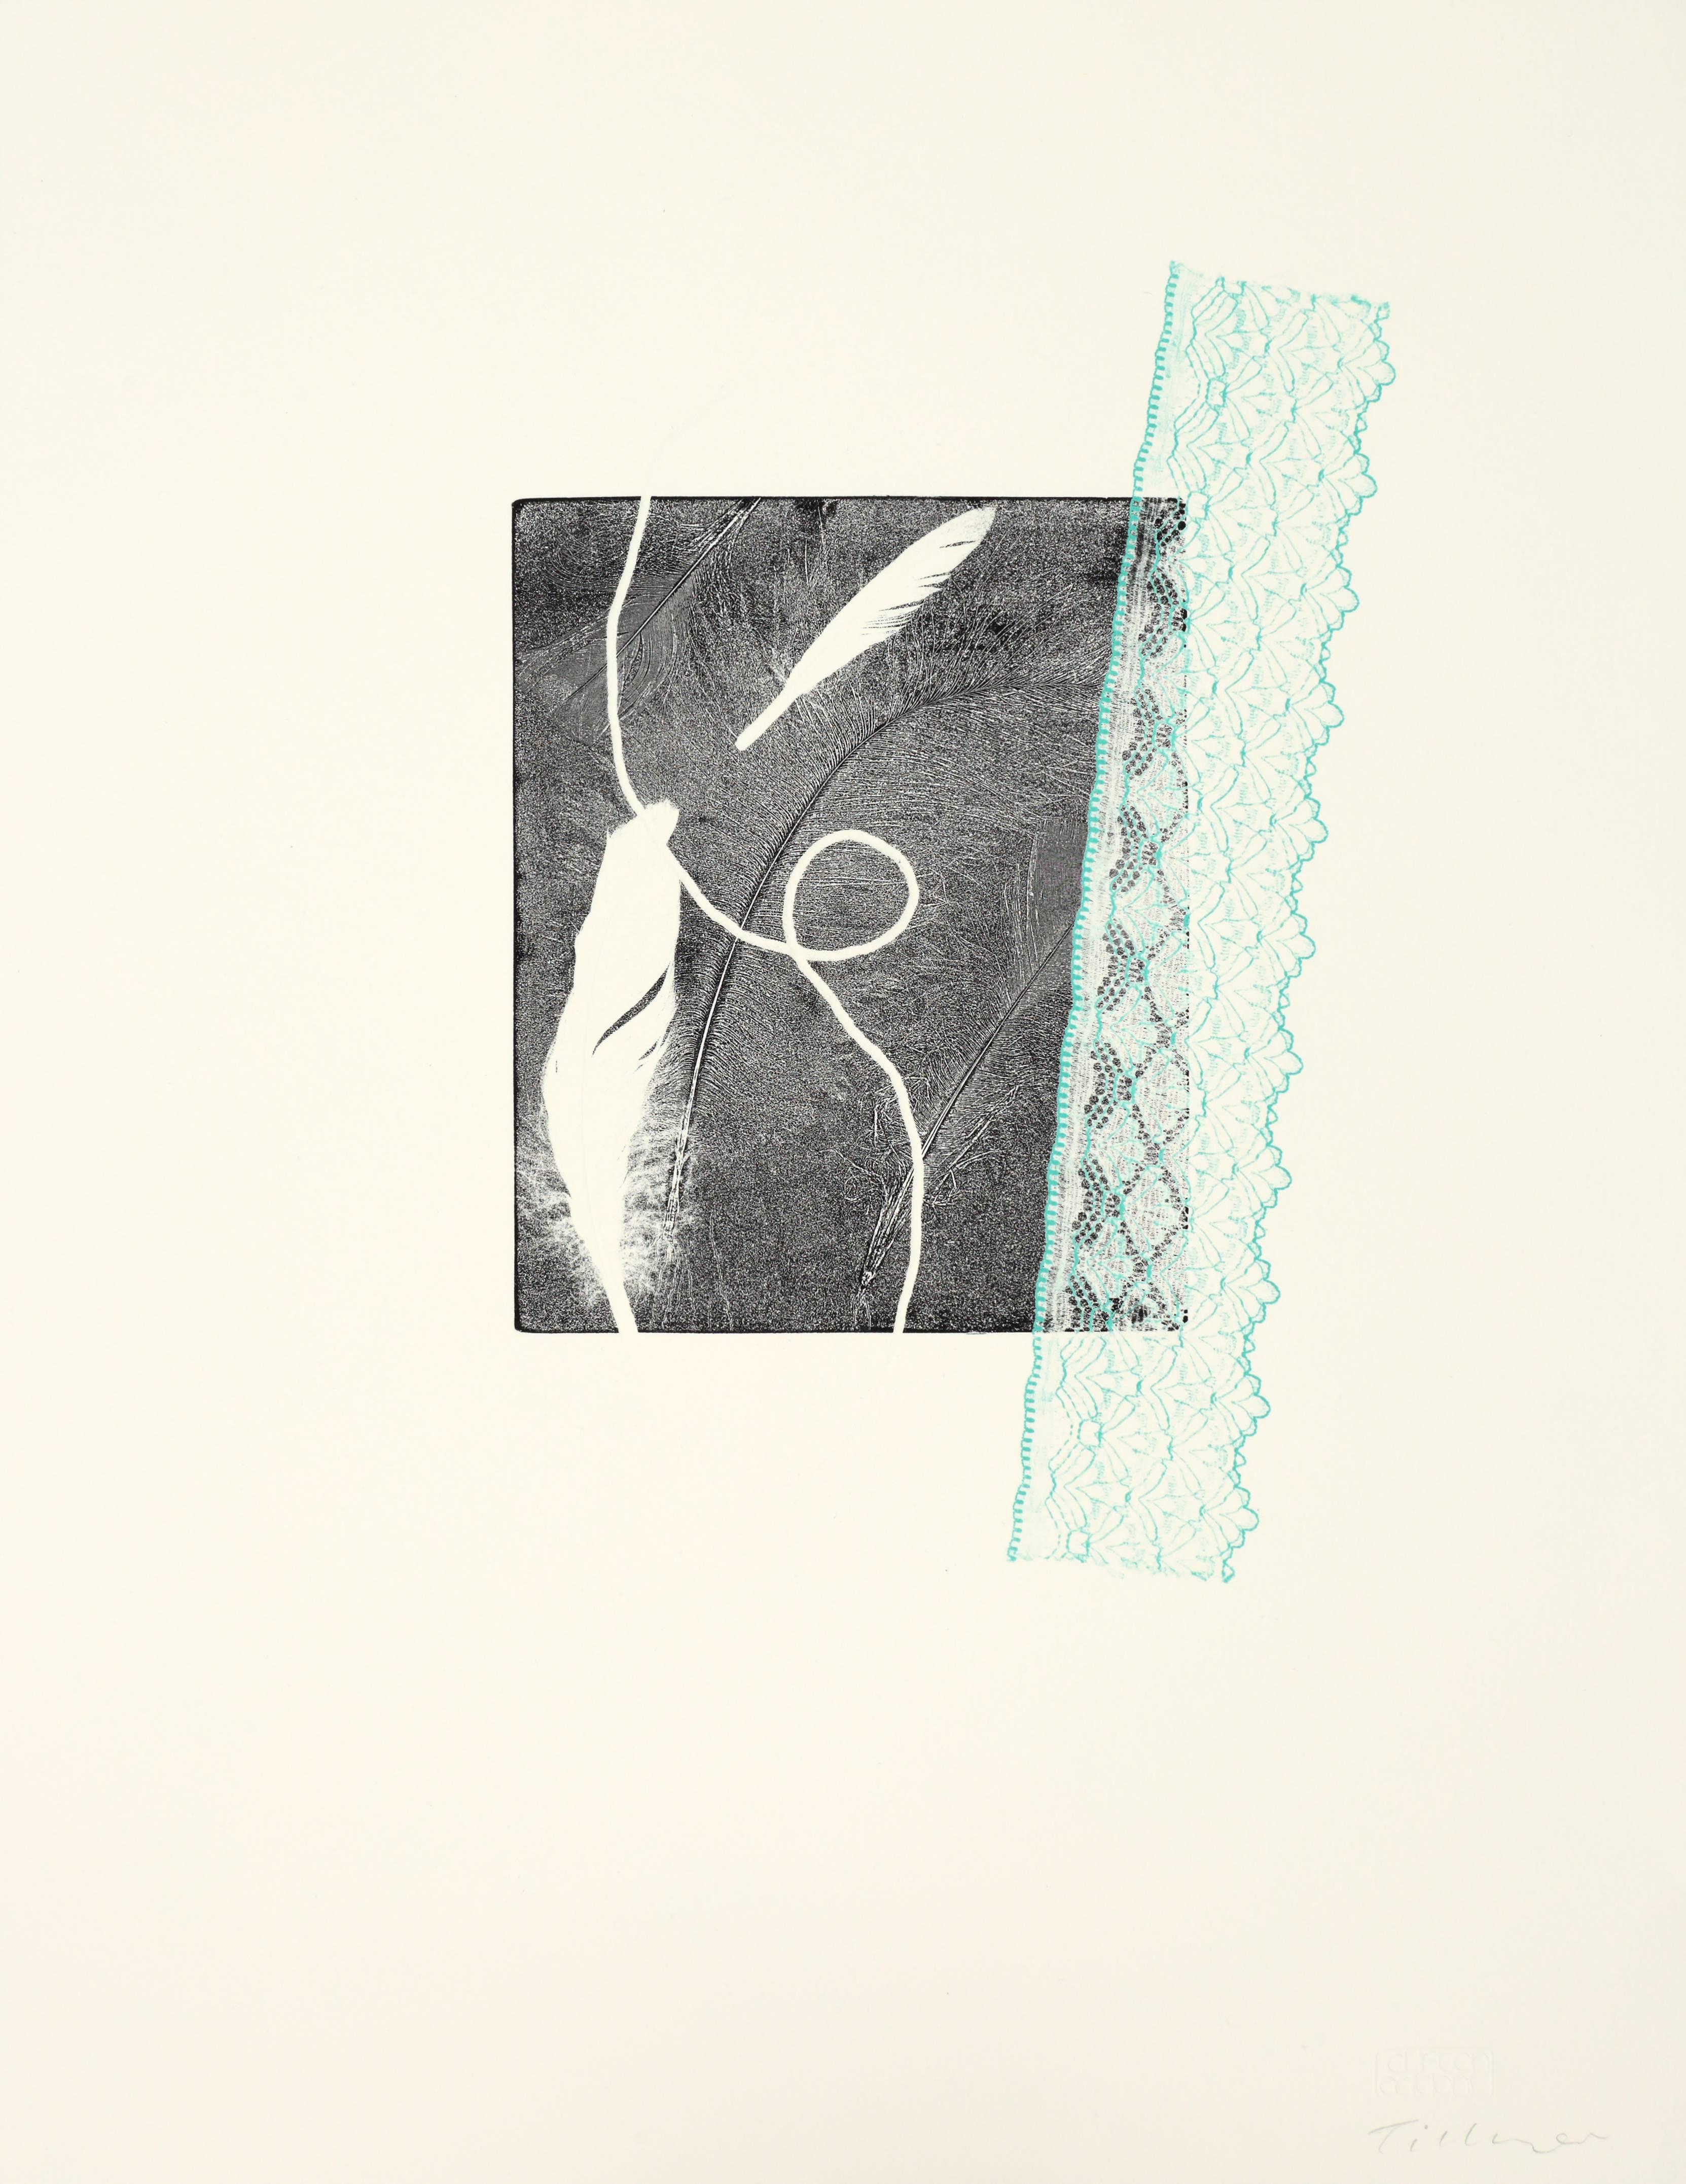 Abstract Print William Tillyer - Synèse des formes et des textures de marques